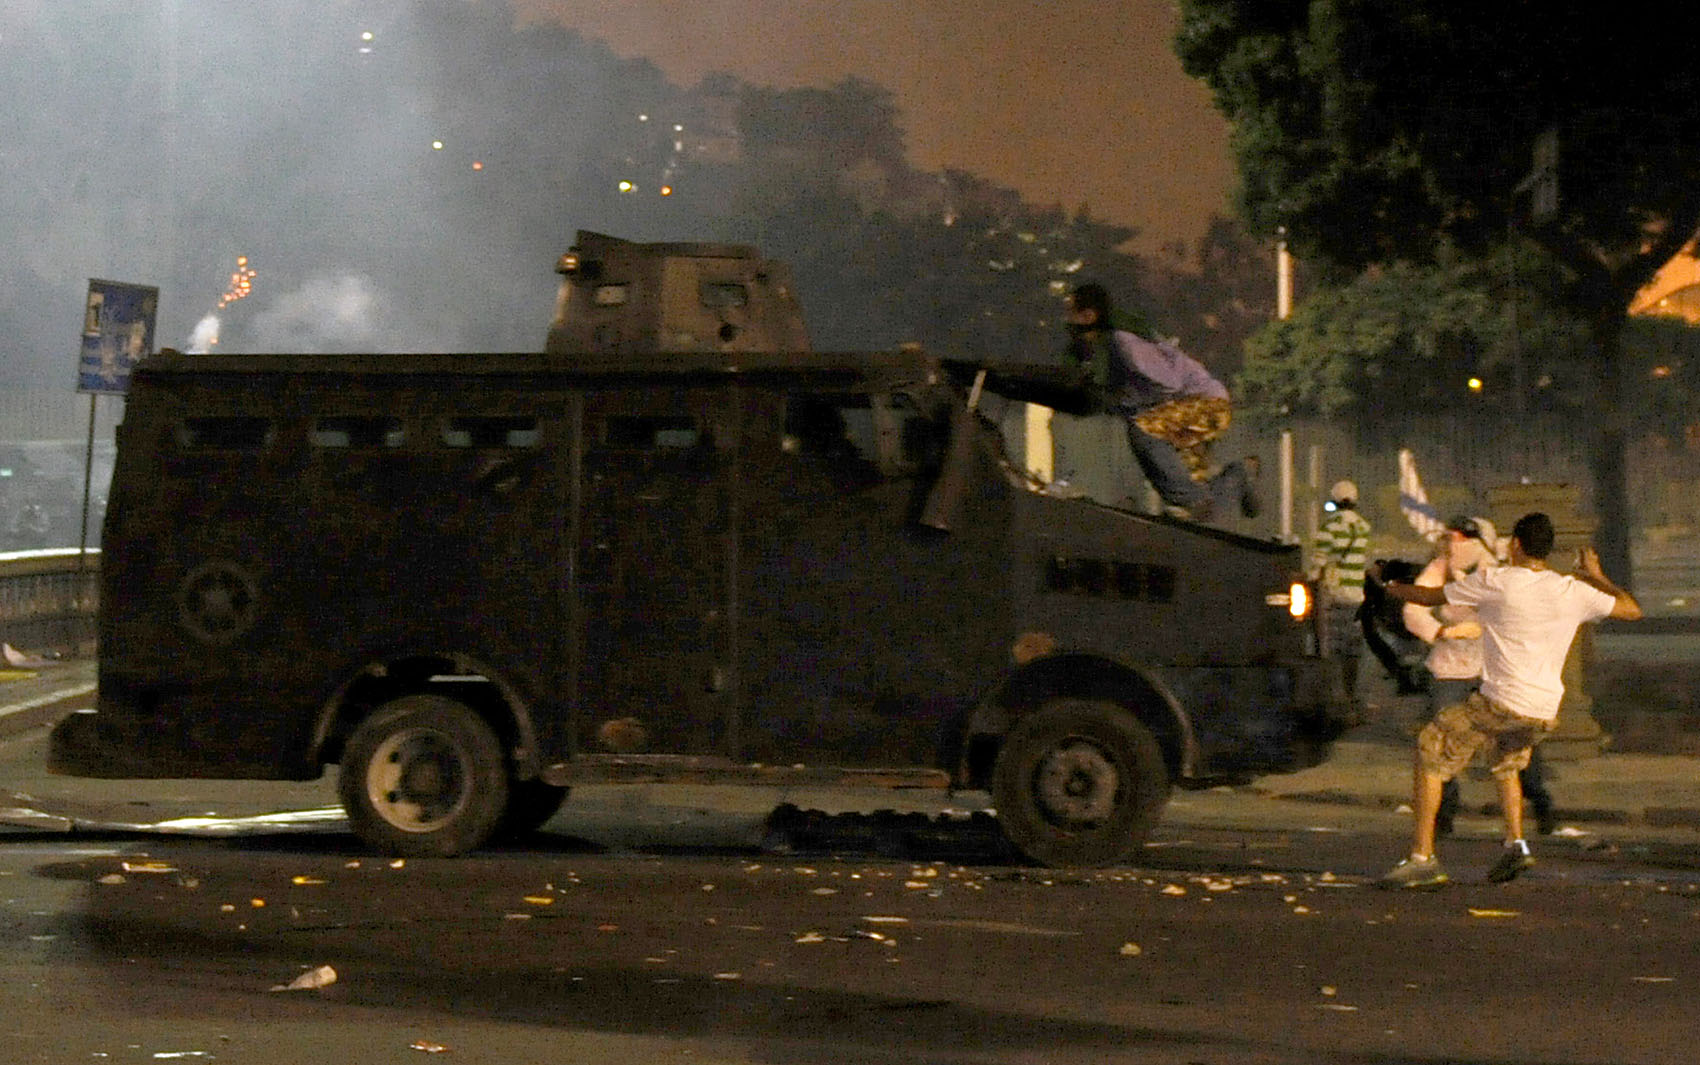 Rio de Janeiro - Homens enfrentam carro do Bope durante confronto no centro do Rio de Janeiro